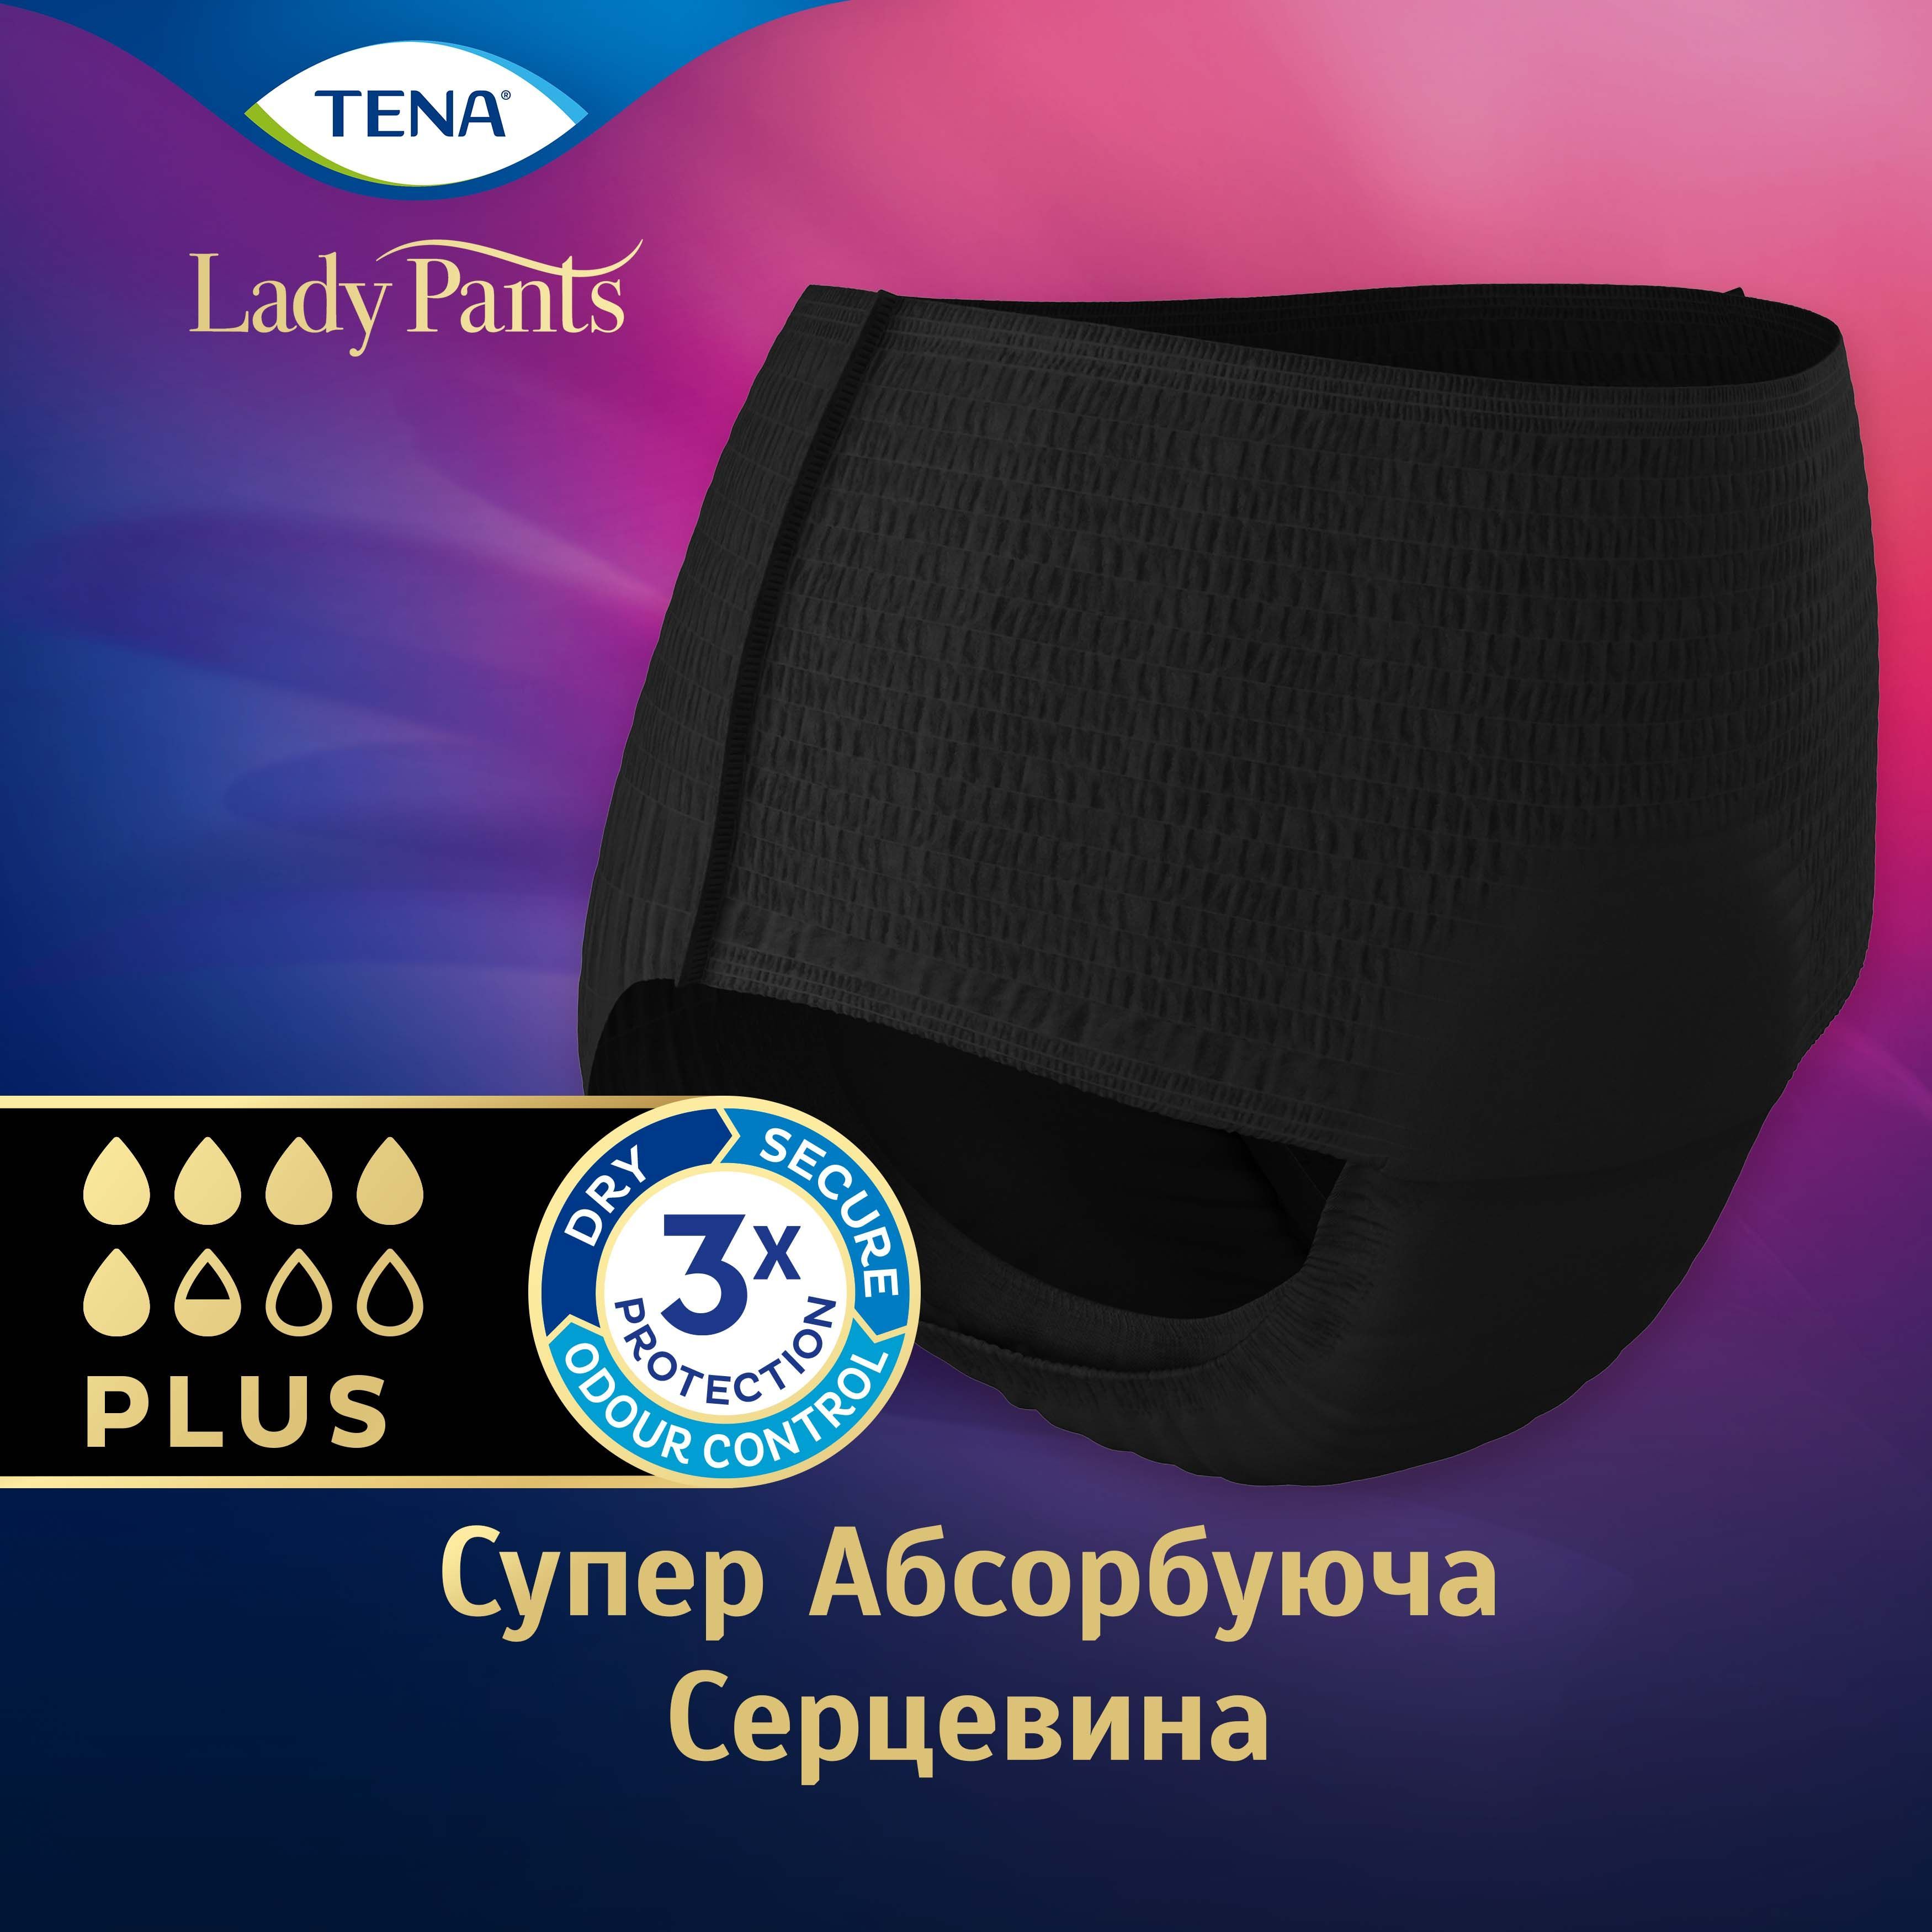 Урологические трусы для женщин Tena Lady Pants Plus Black L, 8 шт. - фото 3